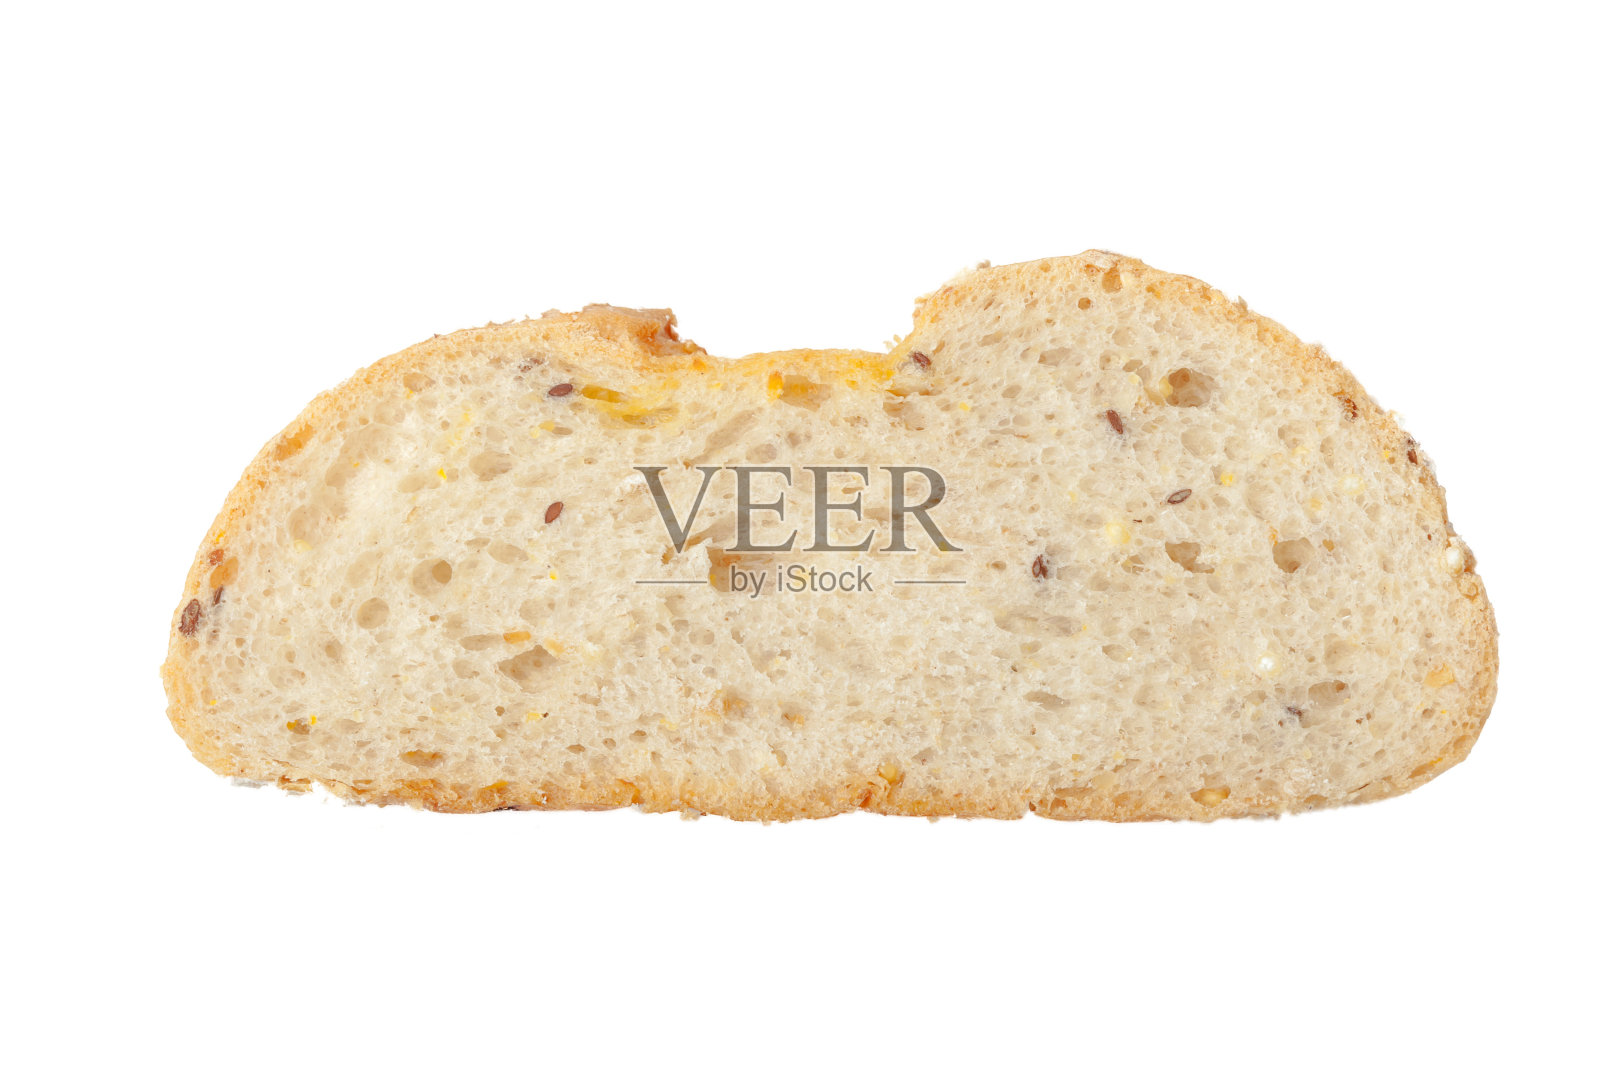 粗磨黑麦和小麦粉制成的面包照片摄影图片